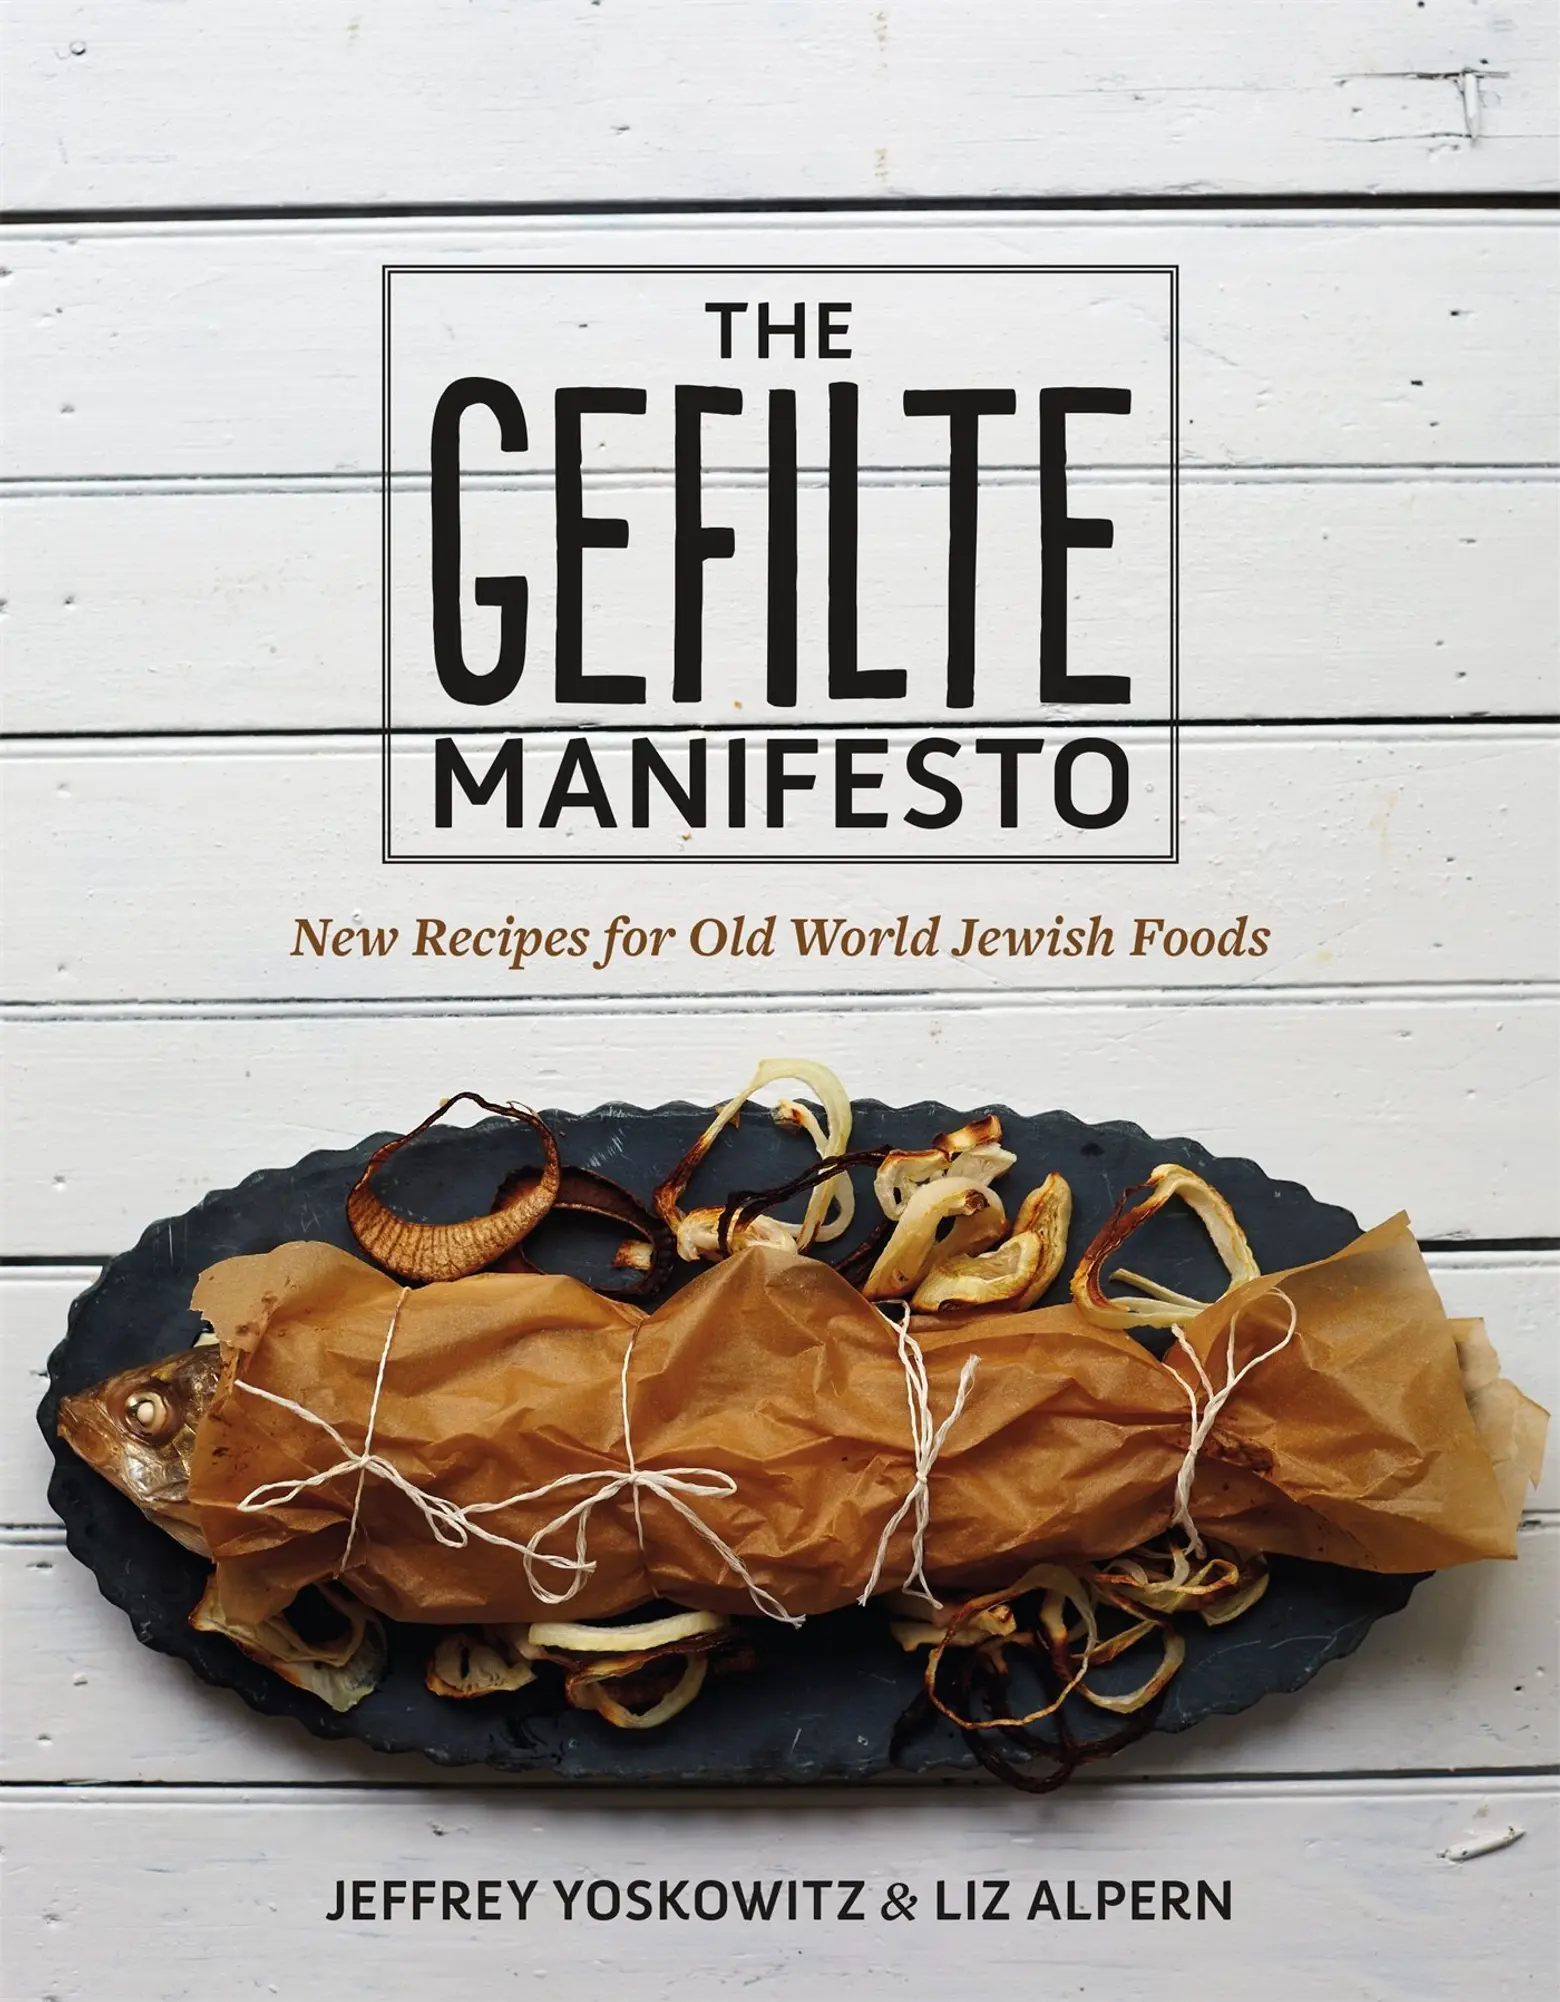 The Gefilte Manifesto, Ashkenazi cuisine, gefilte fish recipes, Liz Alpern, Jeffrey Yoskowitz